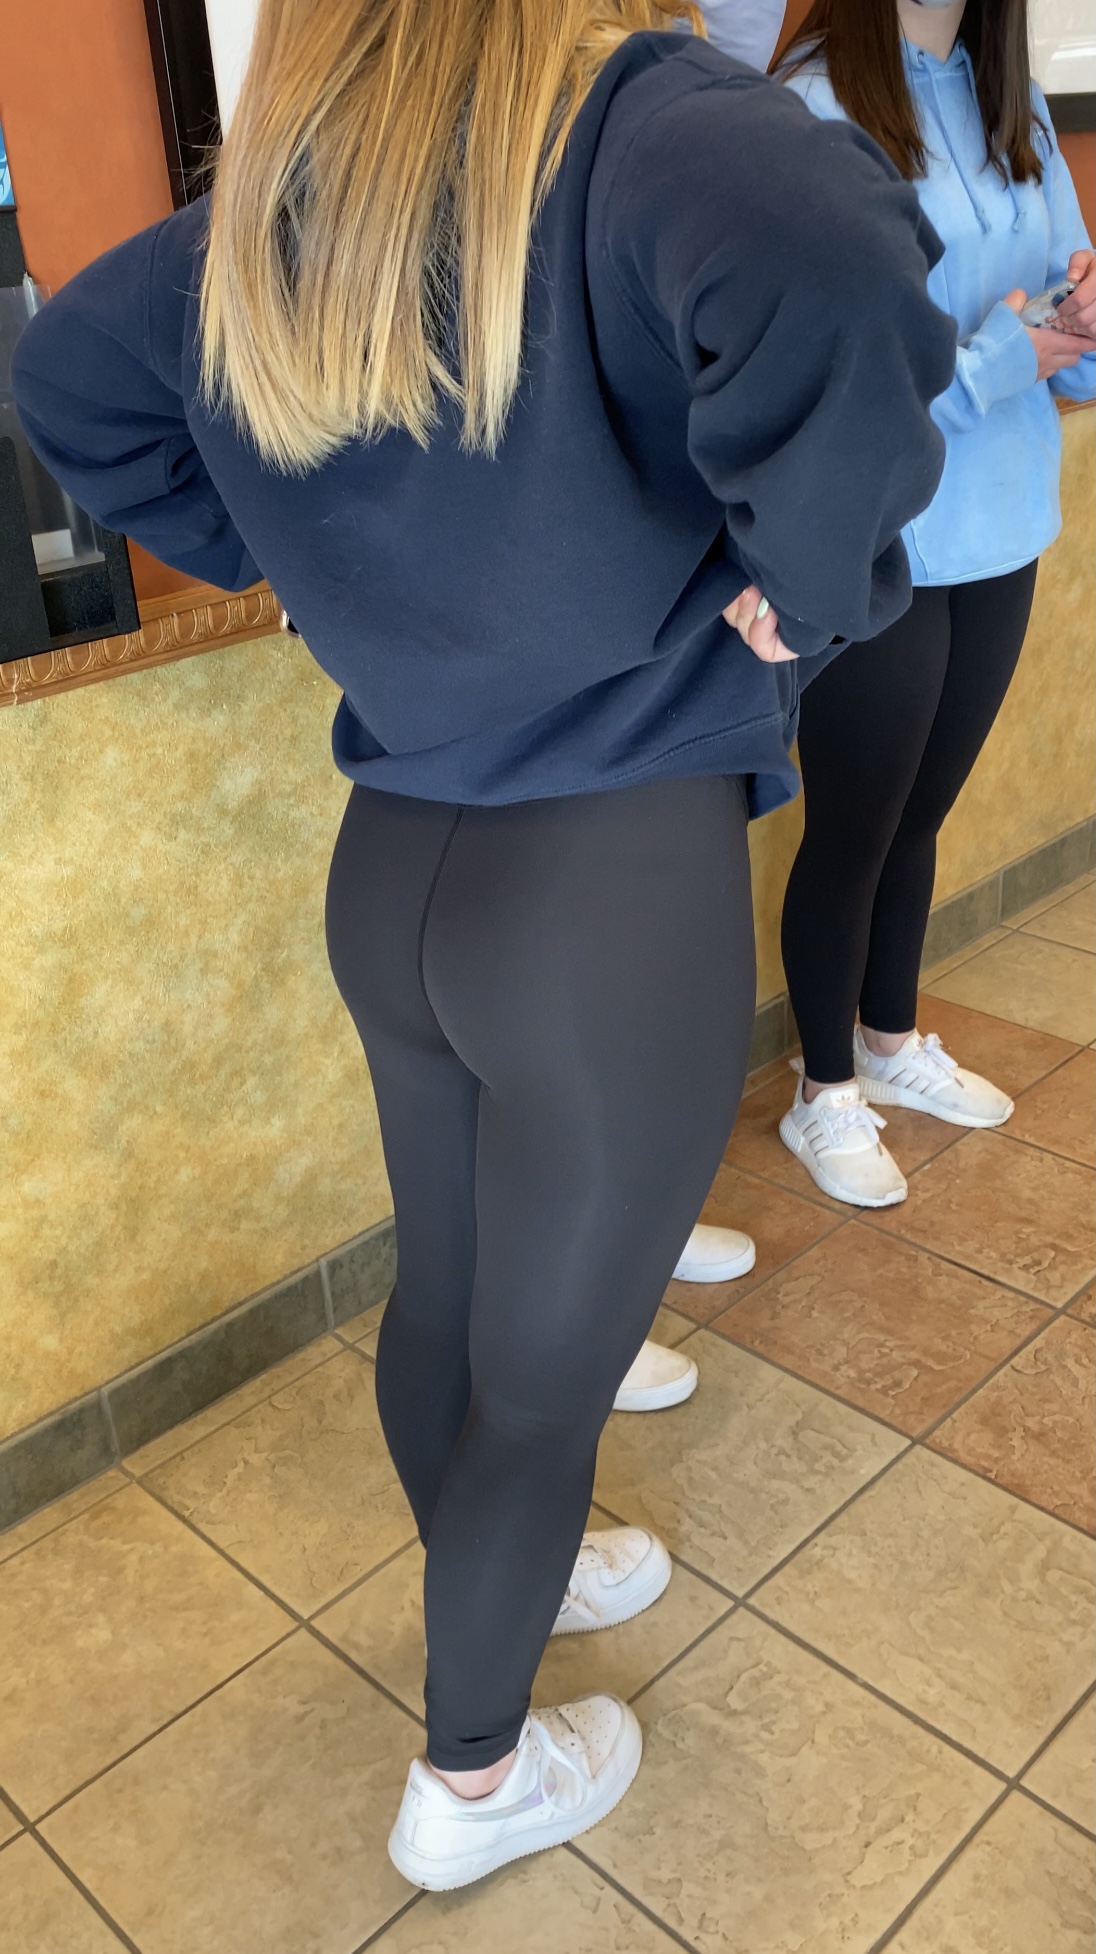 girlfriend leggings thong ass